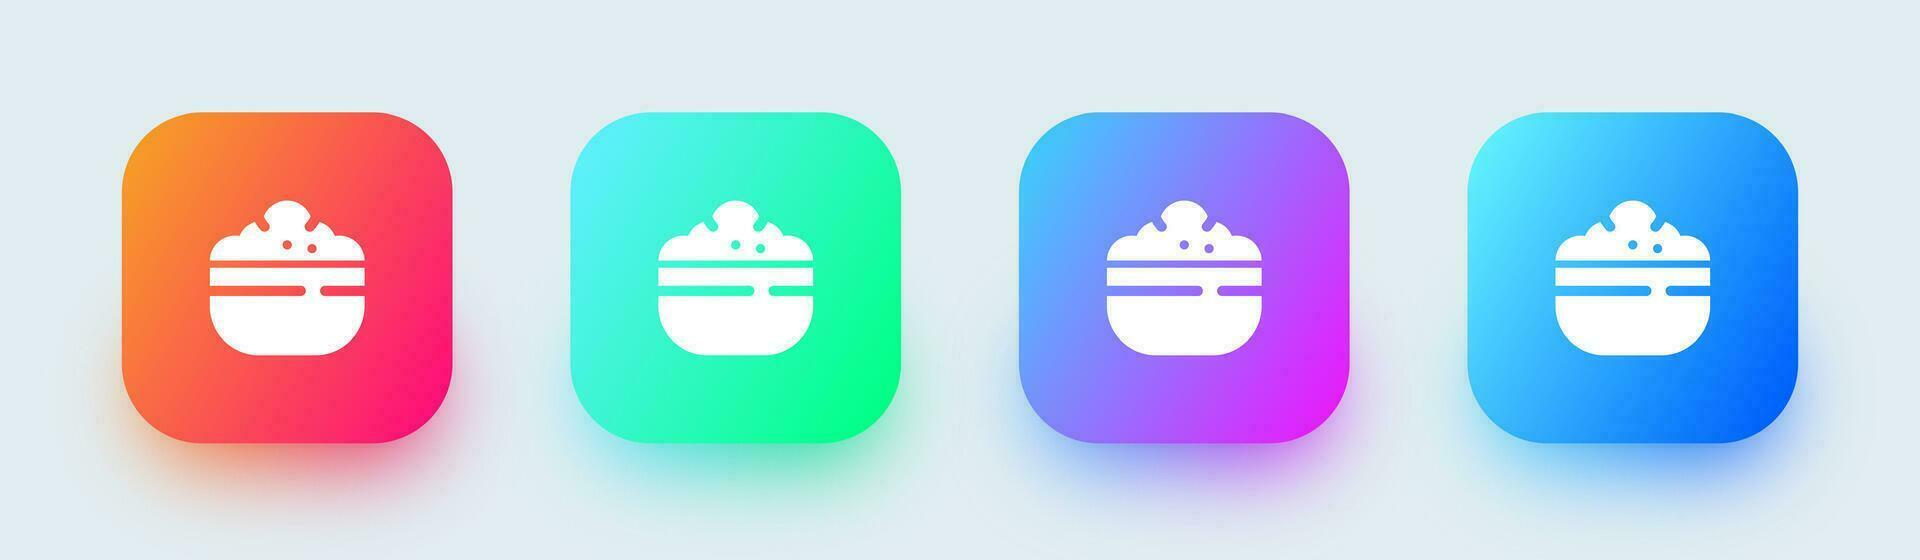 ris skål fast ikon i fyrkant lutning färger. mat tecken vektor illustration.